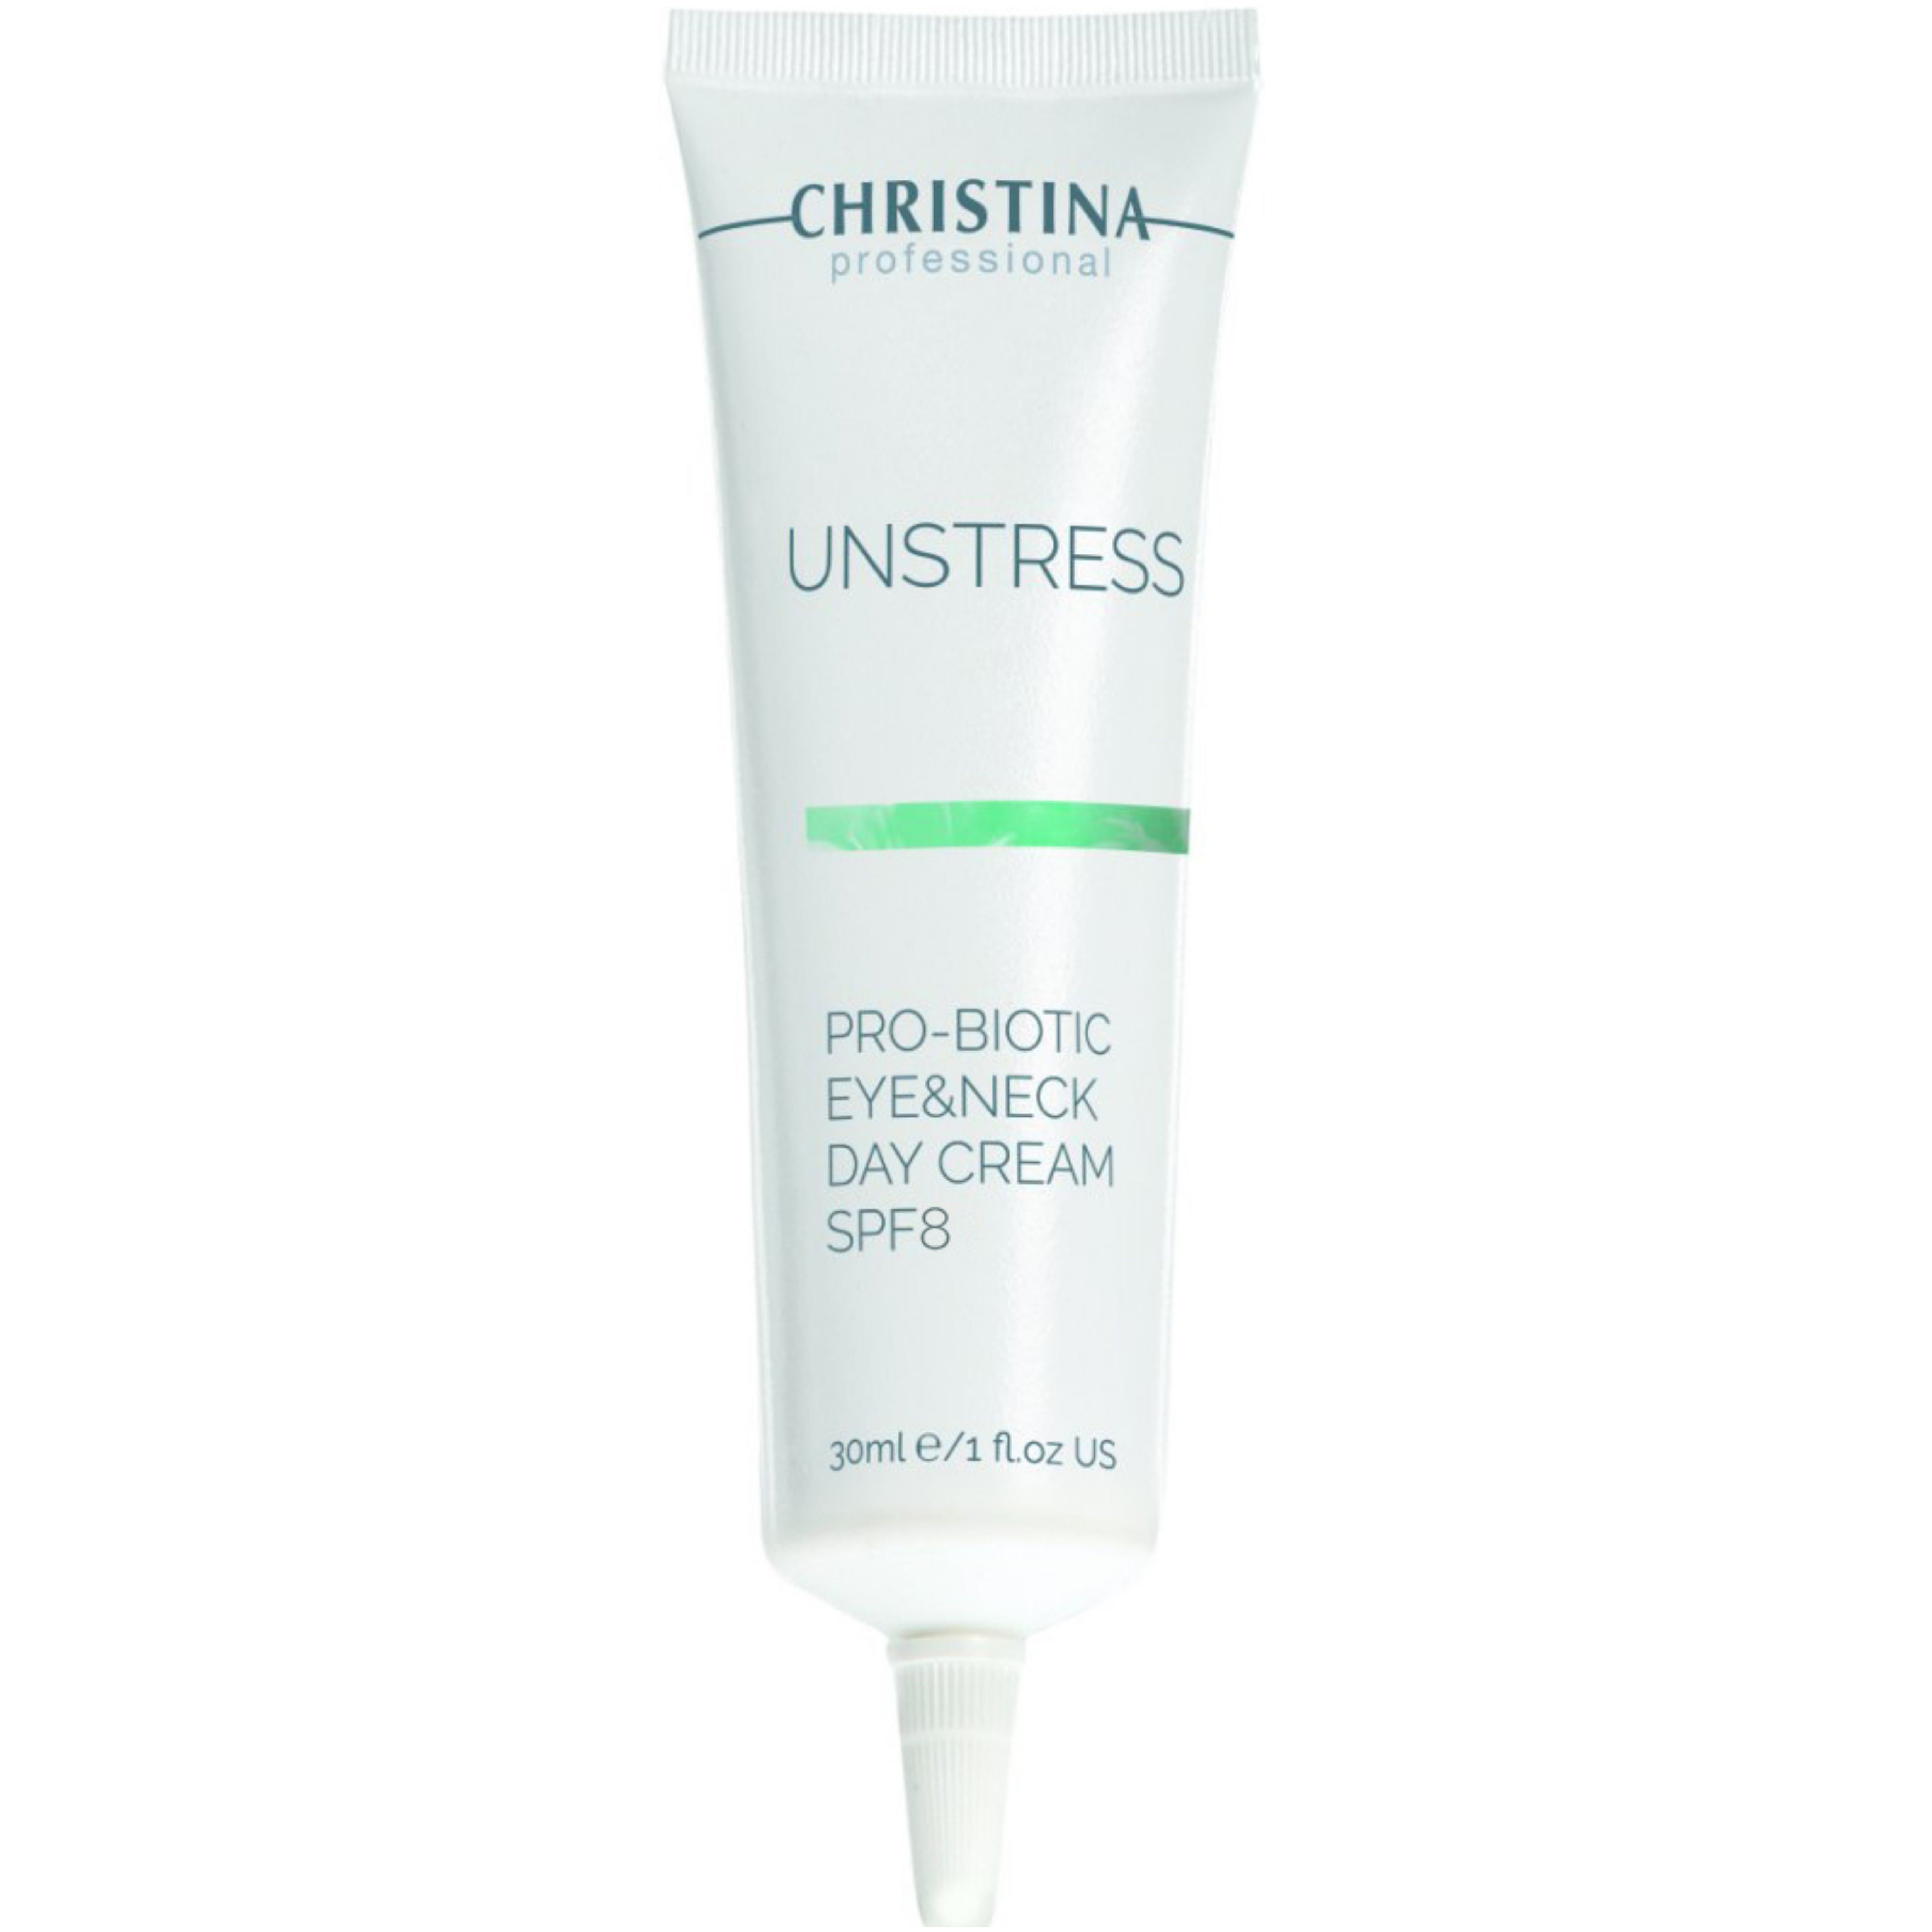 Дневной крем для кожи вокруг глаз и шеи Christina Unstress Probiotic Day Cream Eye & Neck SPF 8 30 мл - фото 1